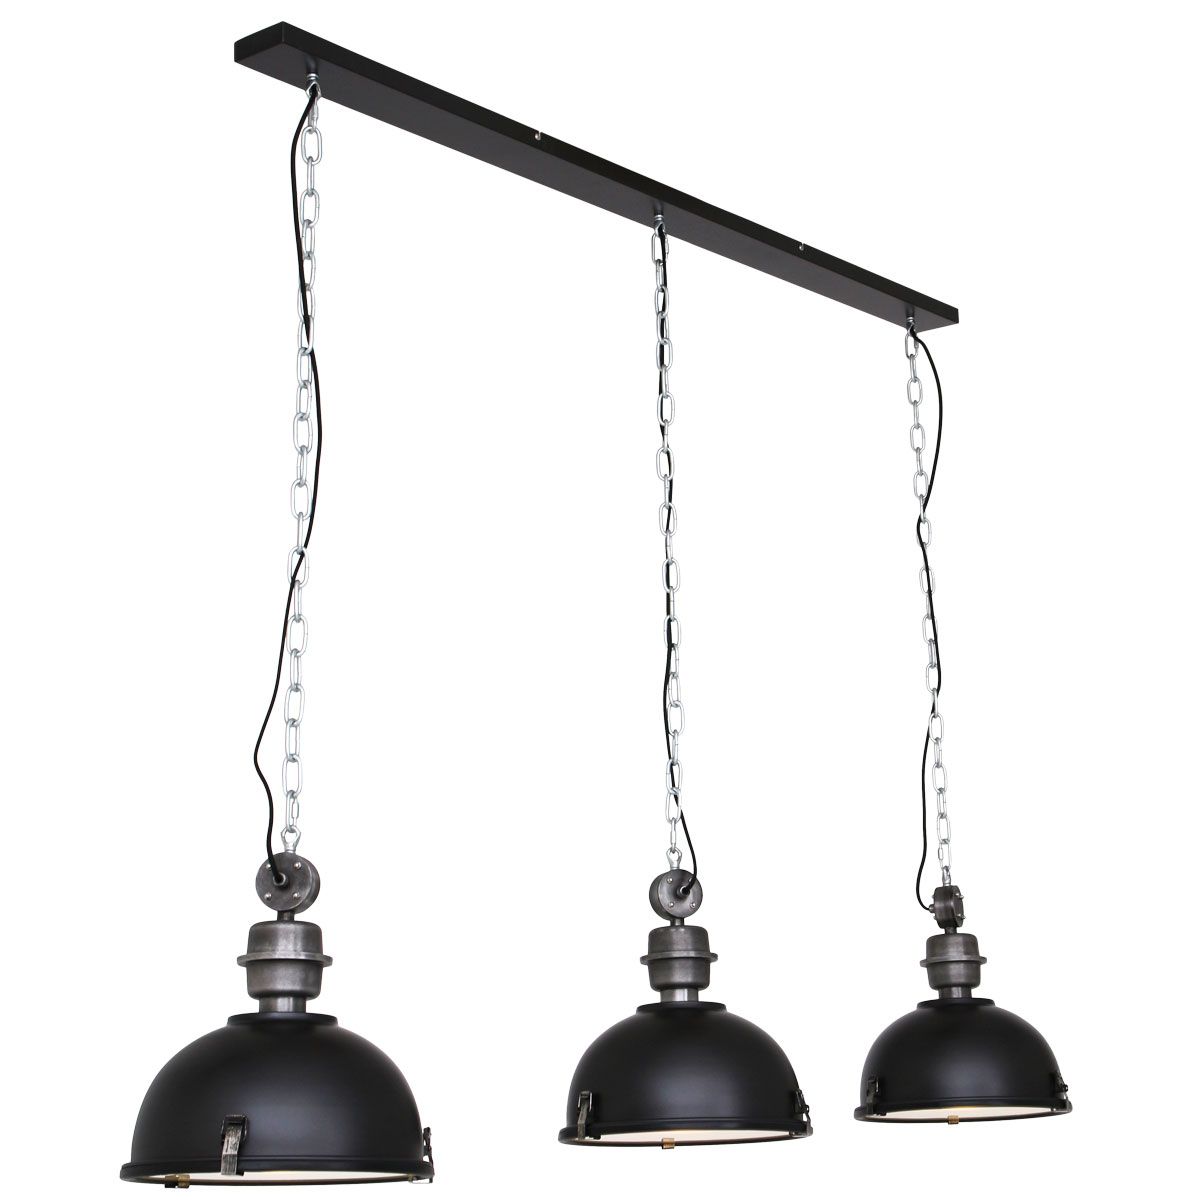 Billede af Trio - loftlampe i sort metal, to størrelser 3 skærme